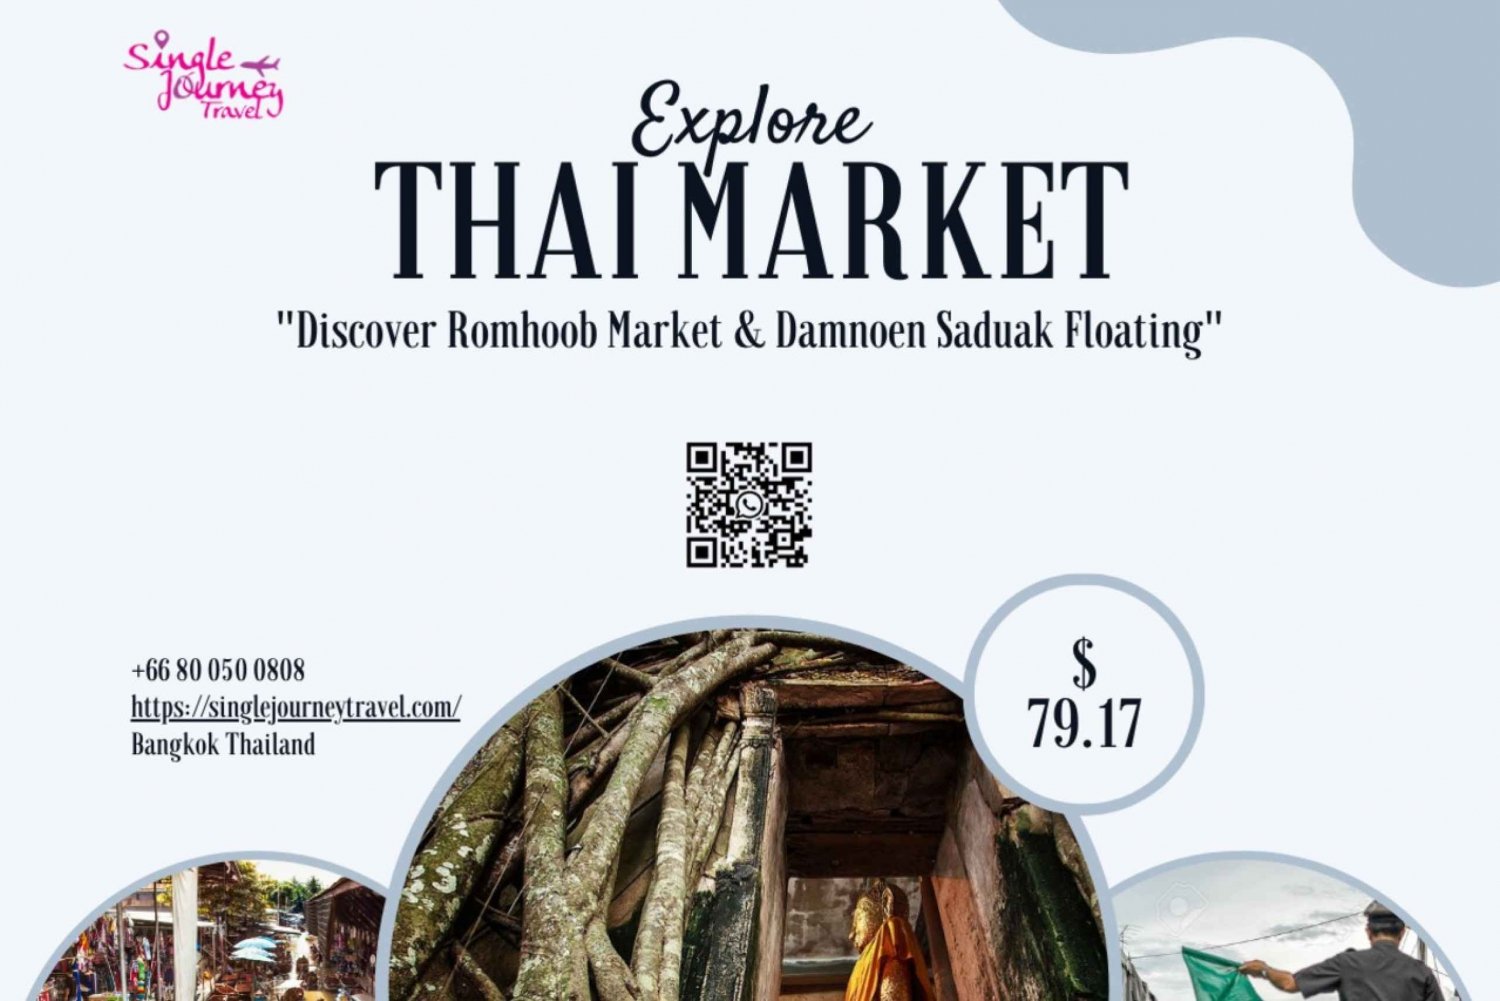 Maeklong Train Market & Damnoen Saduak Floating Market